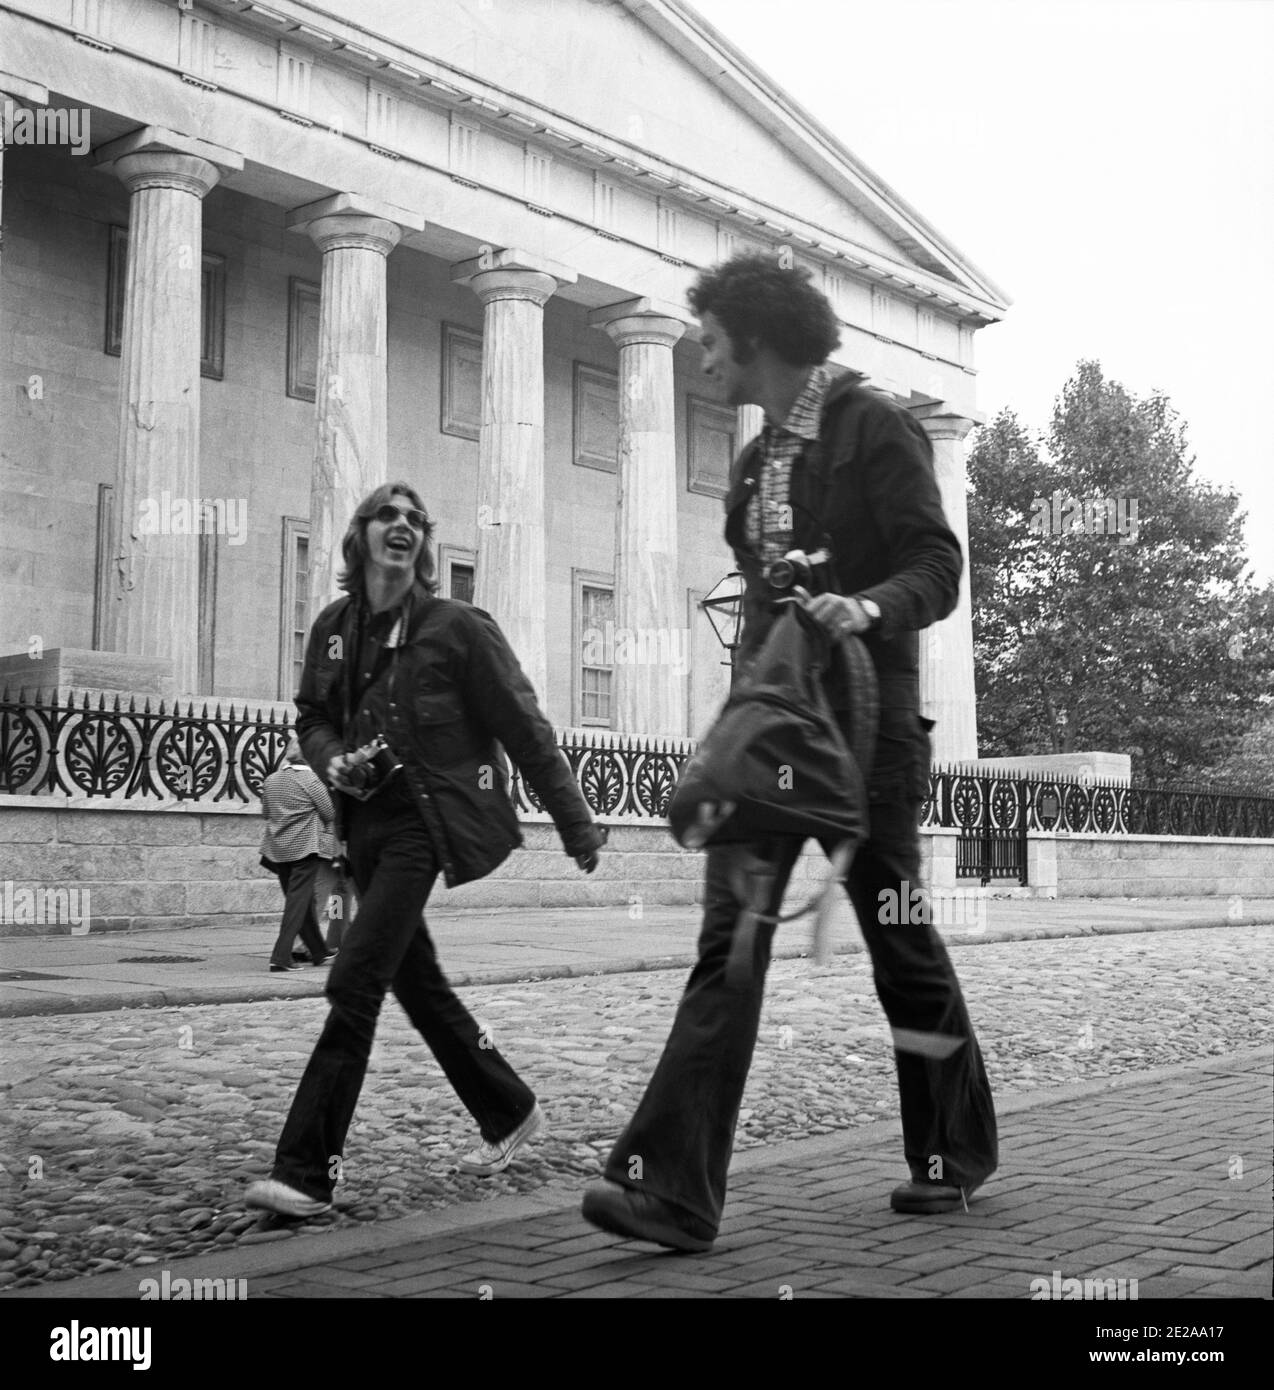 Les jeunes sont de bonne humeur à marcher dans la rue. Deuxième Banque des États-Unis. Philadelphie, États-Unis, 1976 Banque D'Images